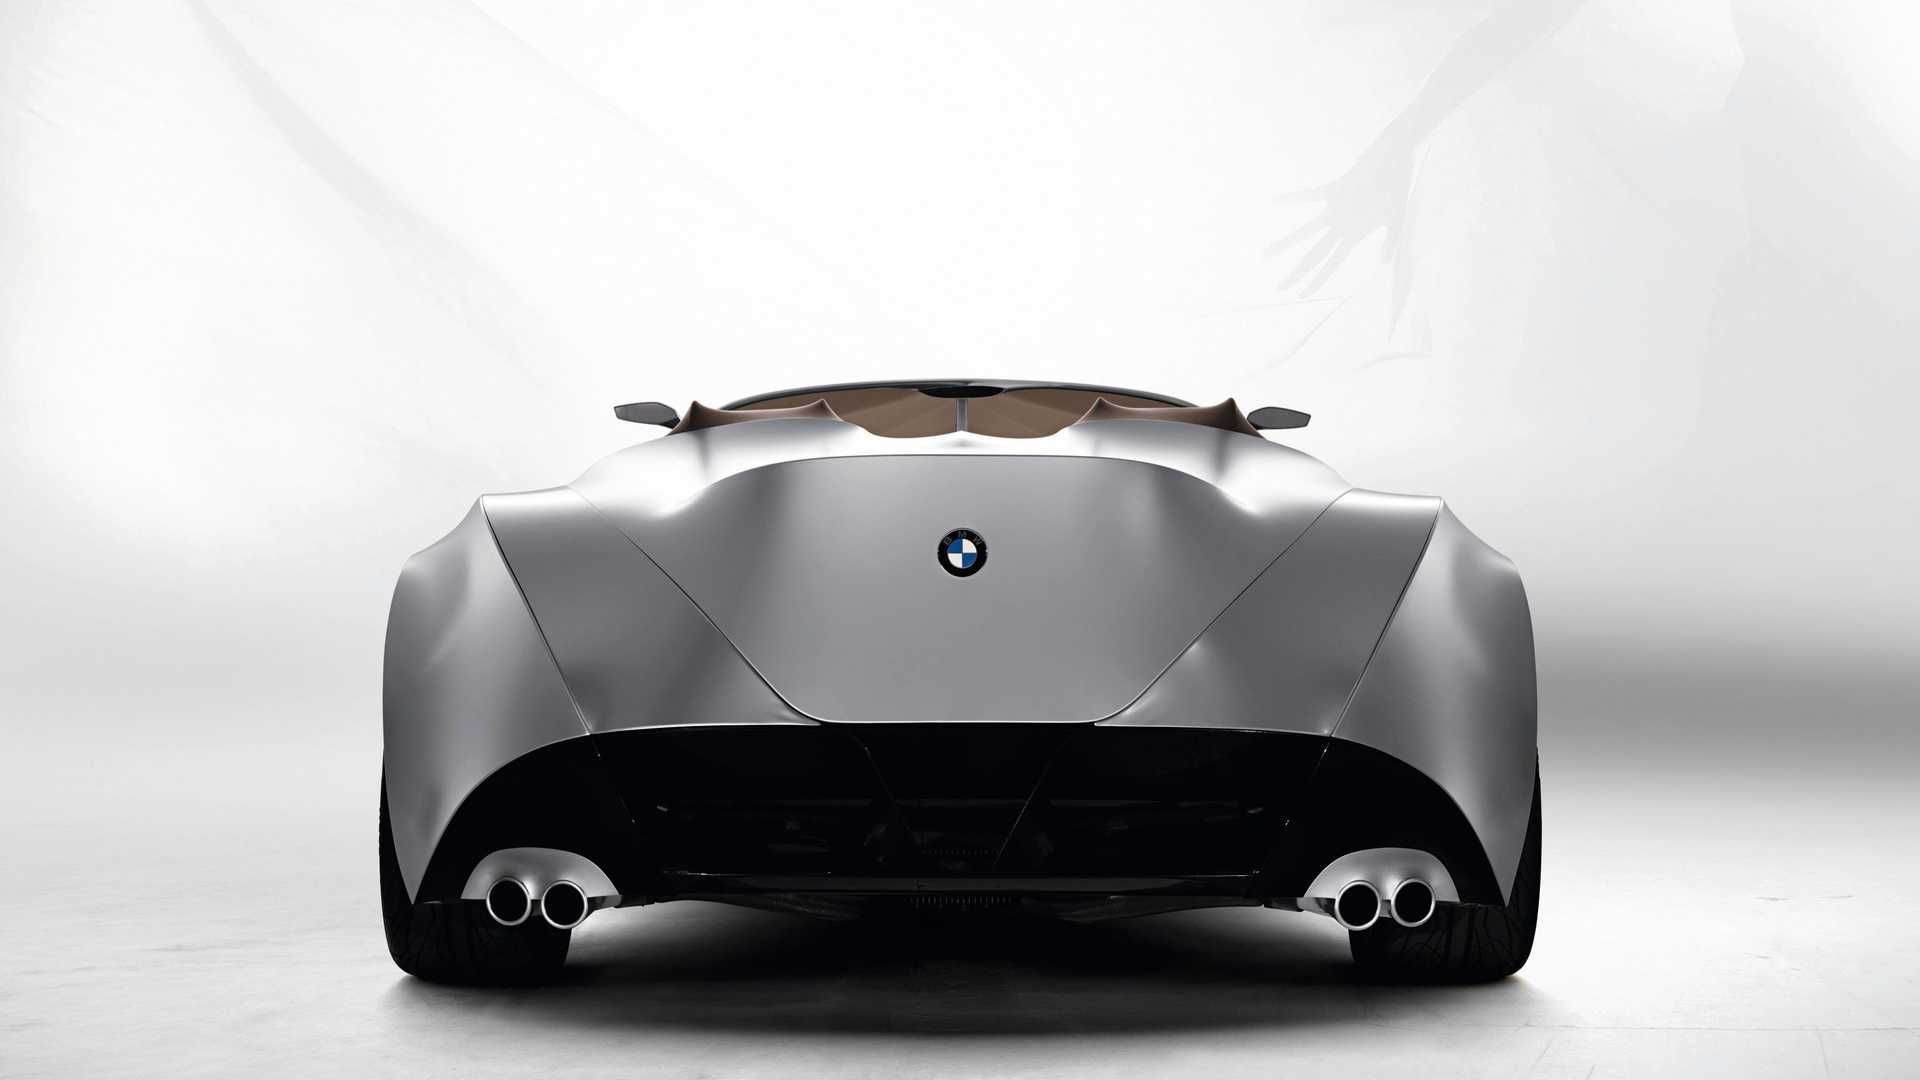 مرجع متخصصين ايران نماي عقب خودروي مفهومي روباز بي ام و گينا / BMW GINA concept convertible